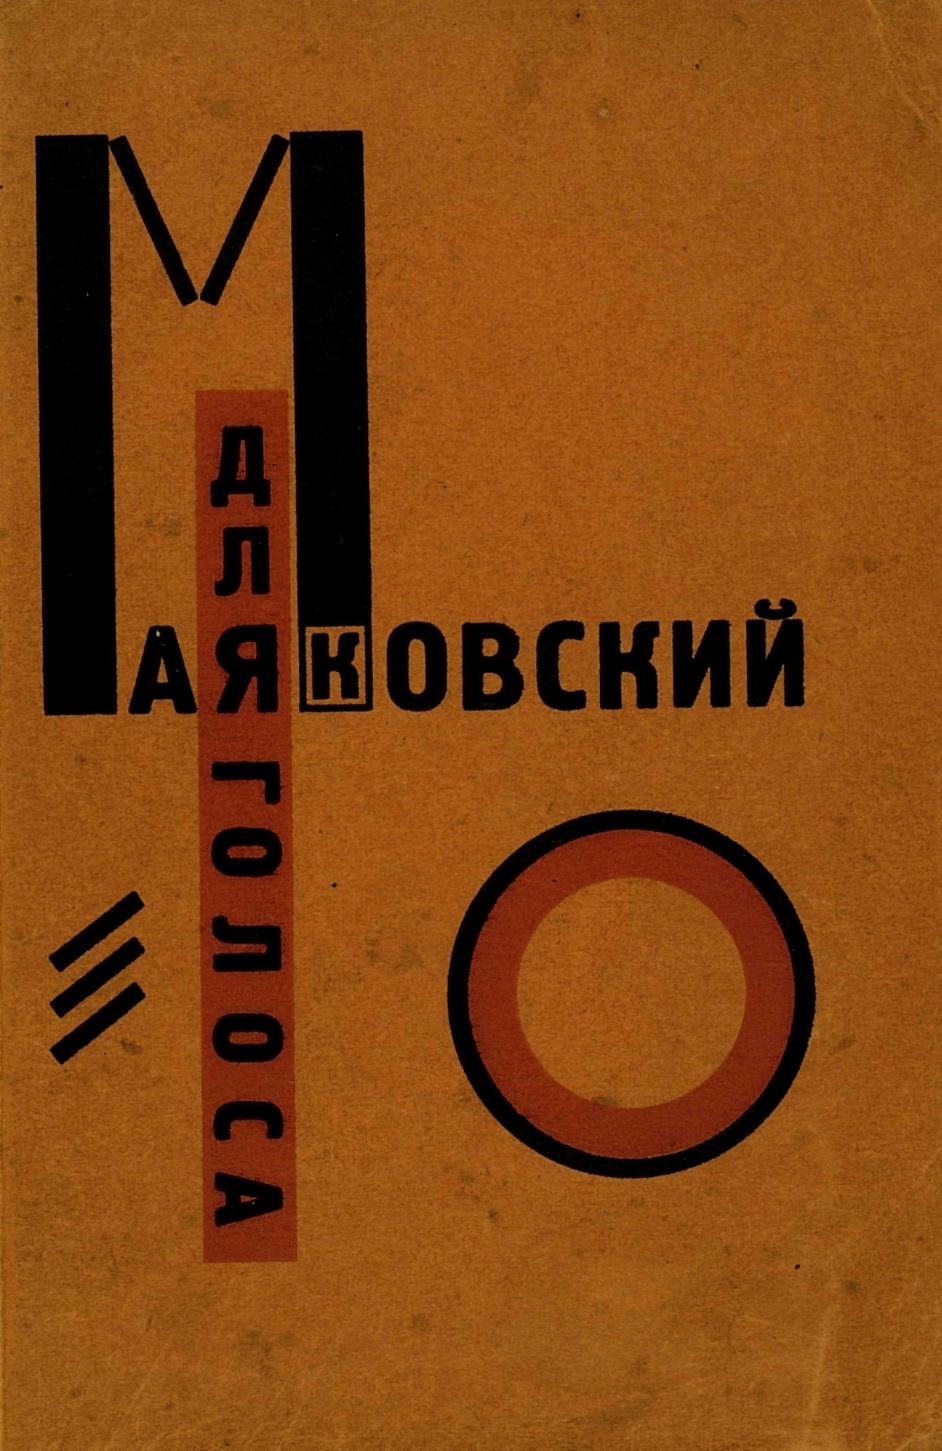 Для голоса / Владимир Маяковский ; Конструктор книги Эл Лисицкий. — Берлин, 1923